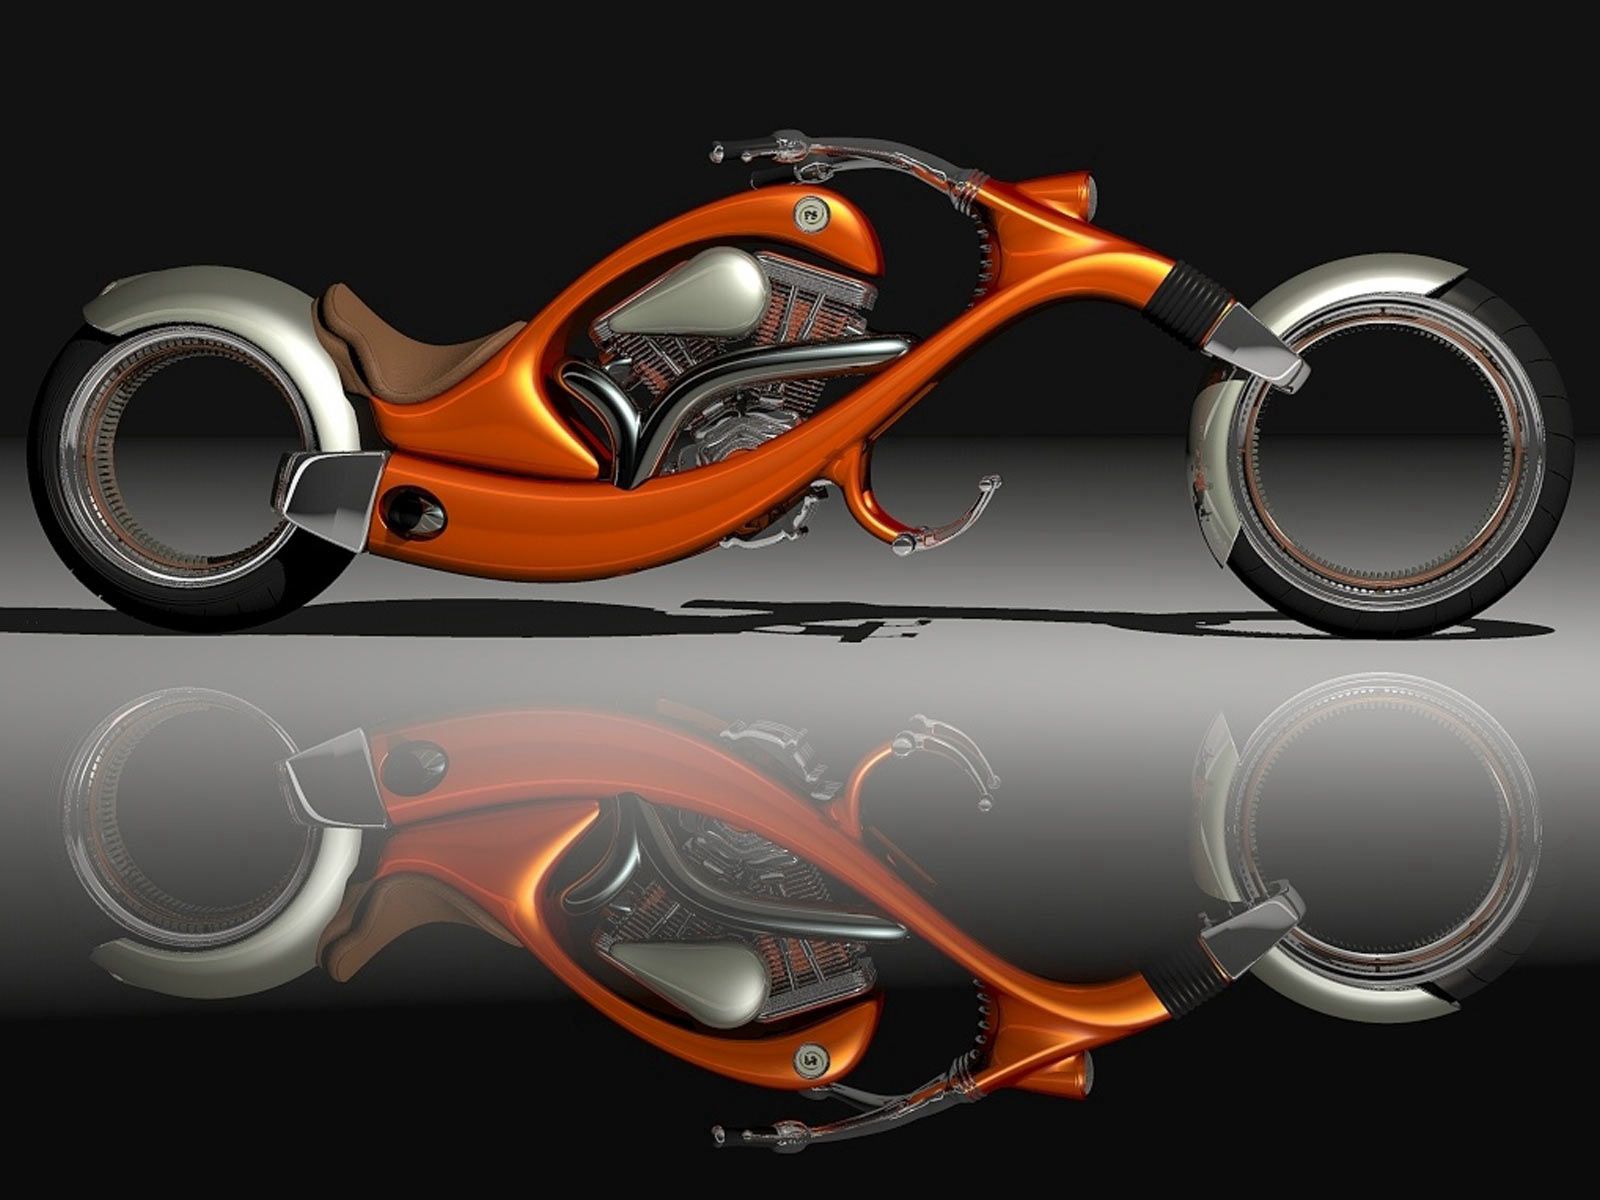 motorcycles, orange, motorcycle, stylish 1080p